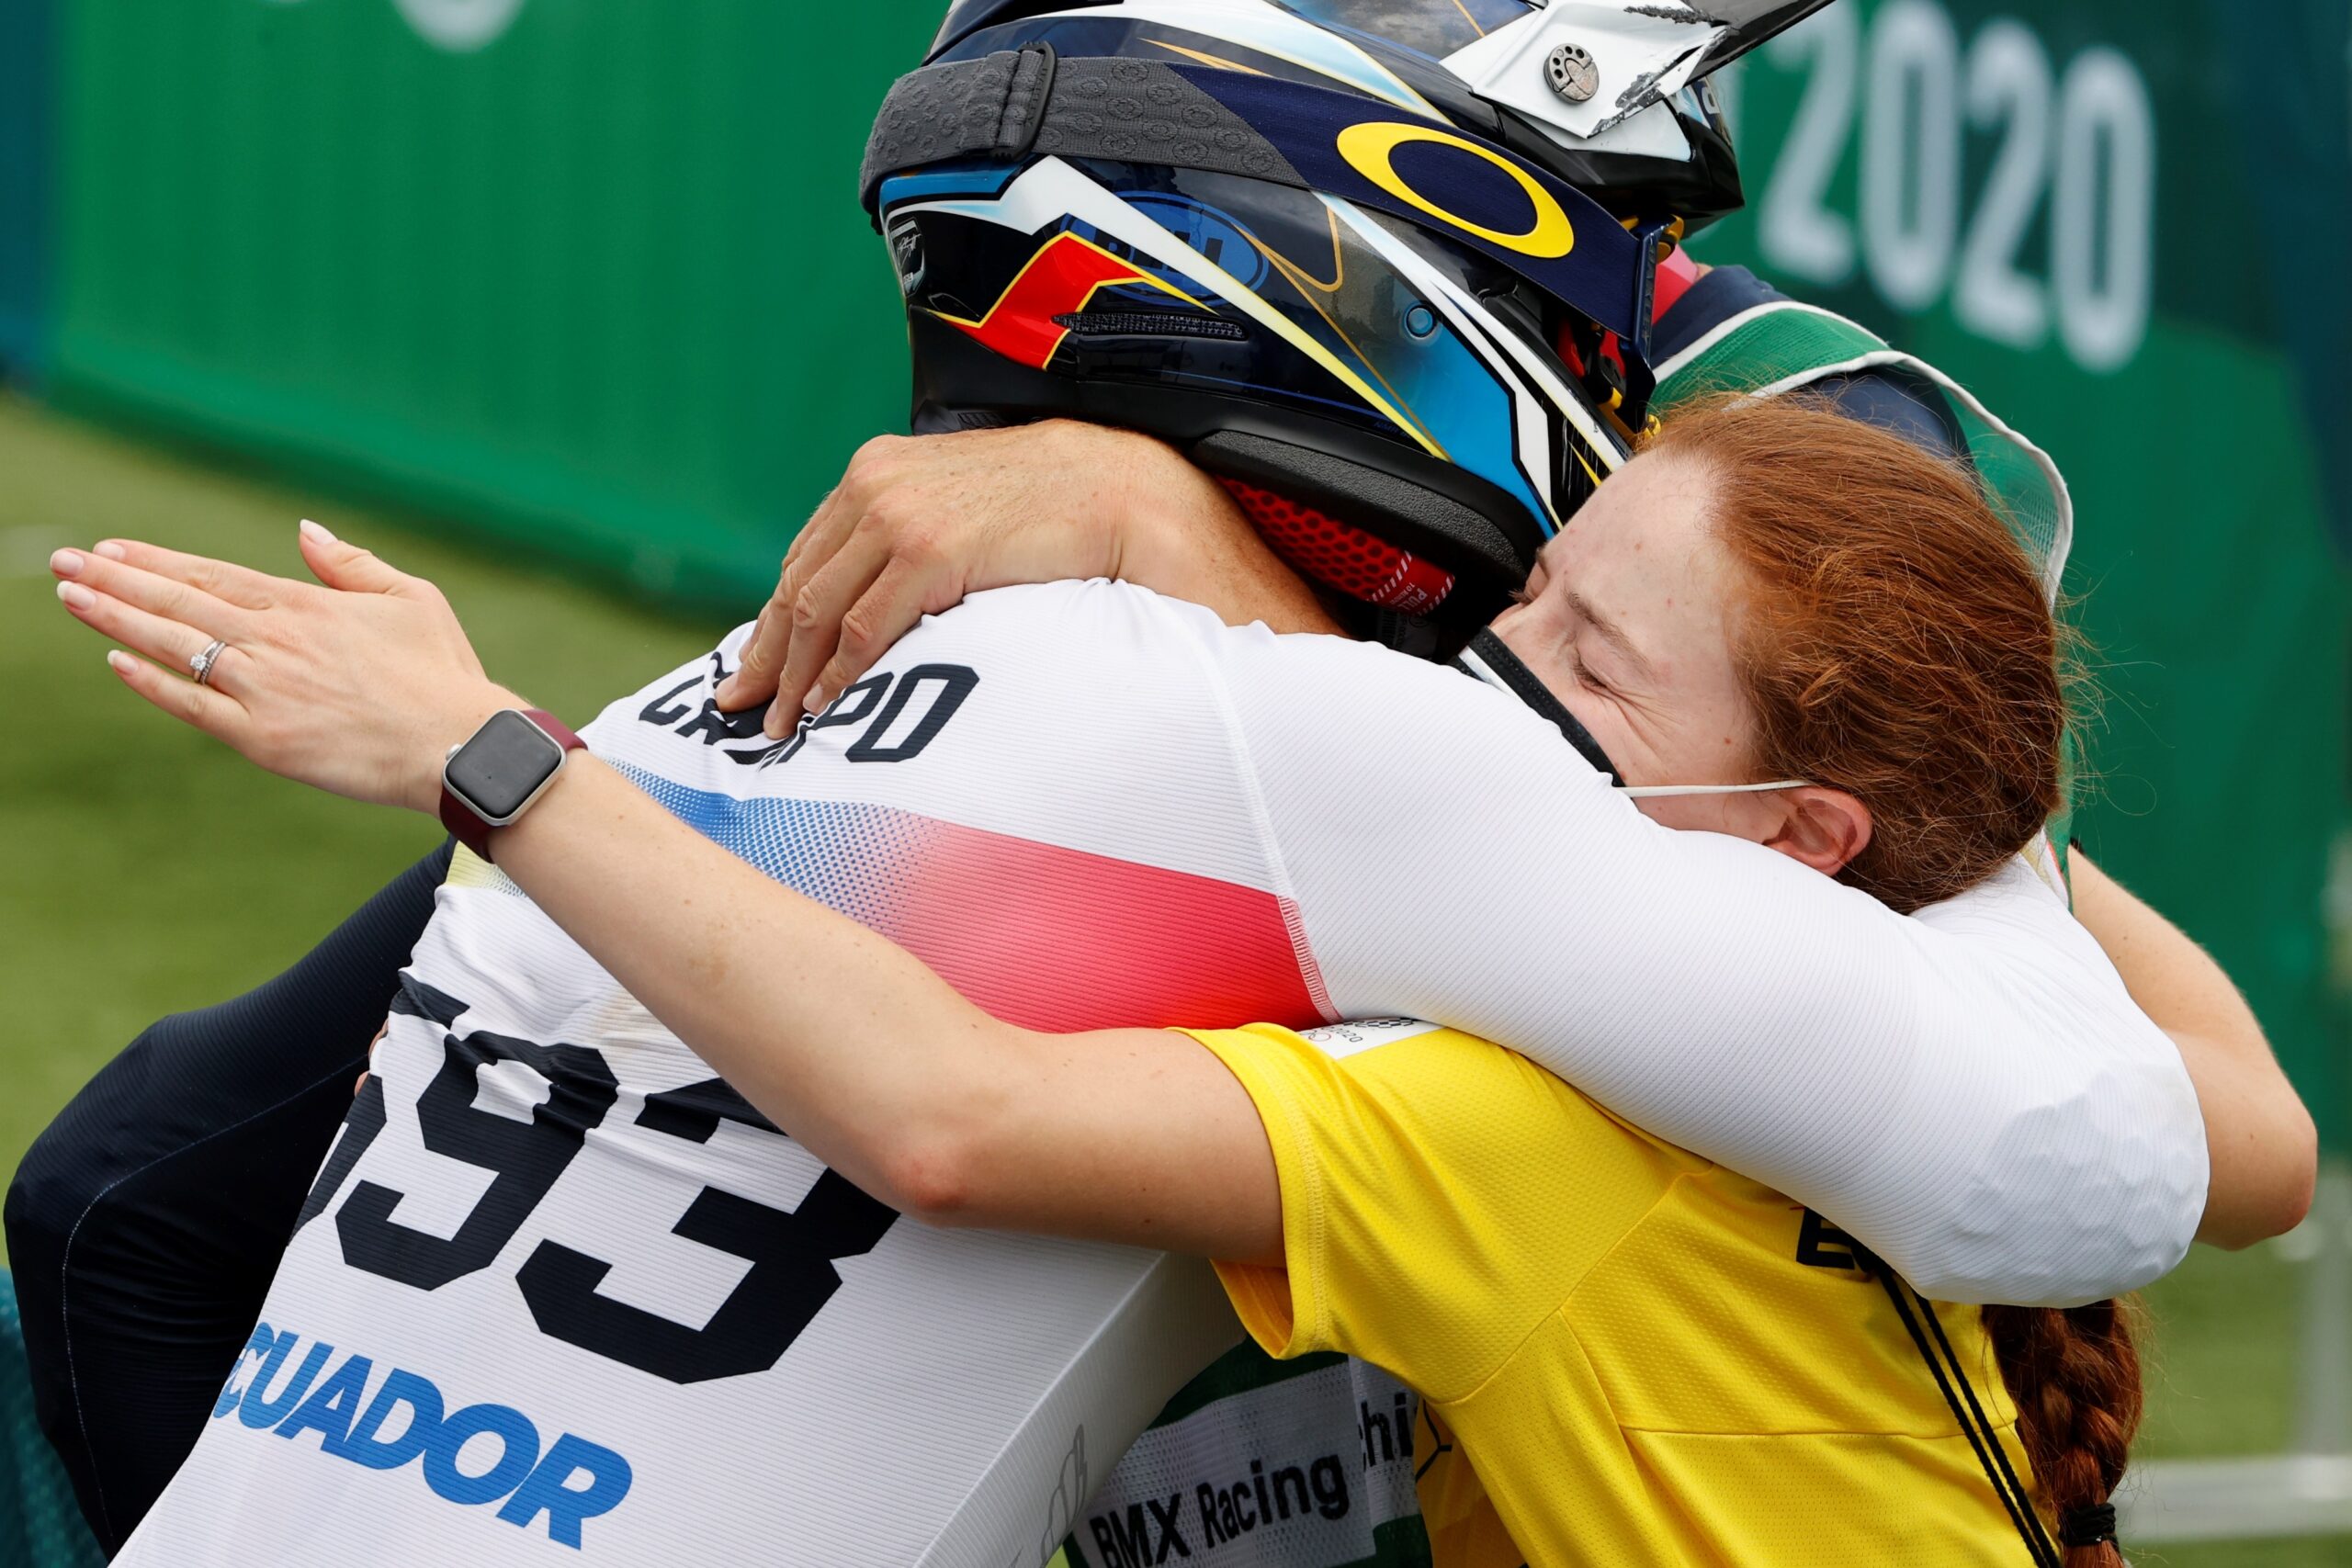 Alfredo Campo se abrazó con su esposa Ana María Crespo, al final de su participación en Tokio 2020. Foto: EFE